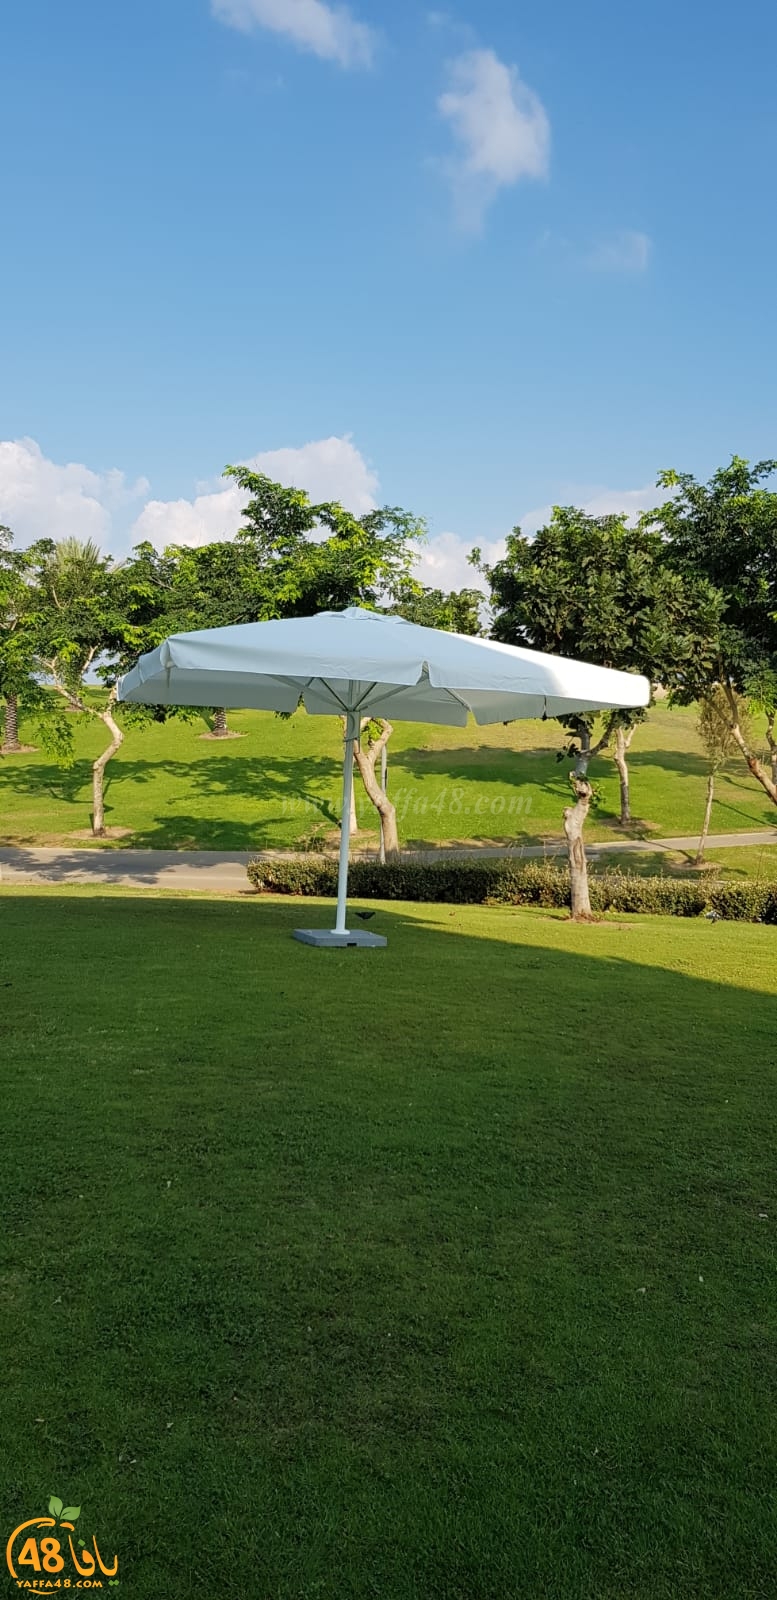  بالصور: نصب شمسيات ومراحيض متنقلة لراحة النزلاء في متنزه العجمي بيافا 